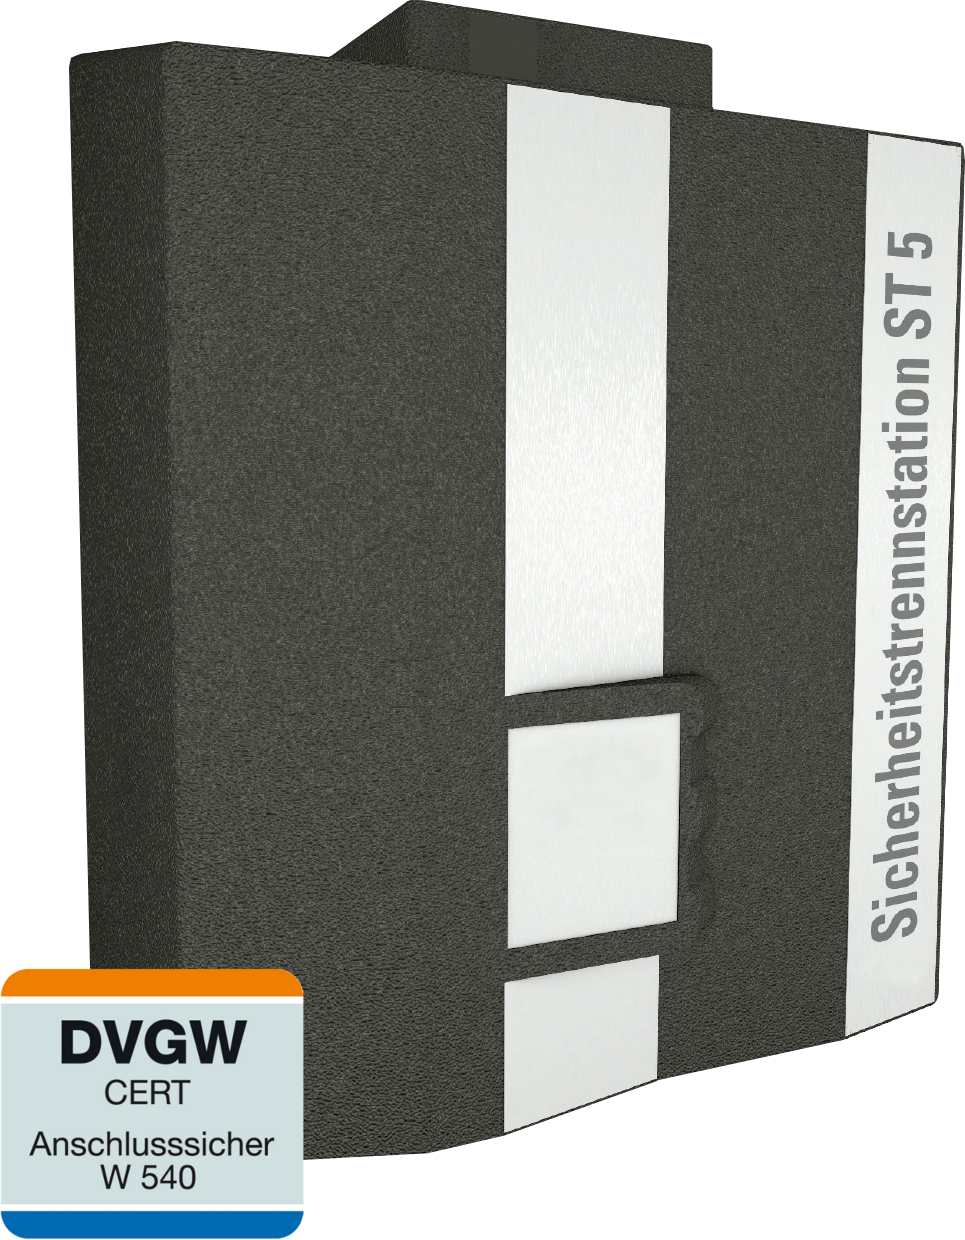 Sicherheitstrennstation ST5 mit DVGW CERT Anschlusssicher W 540